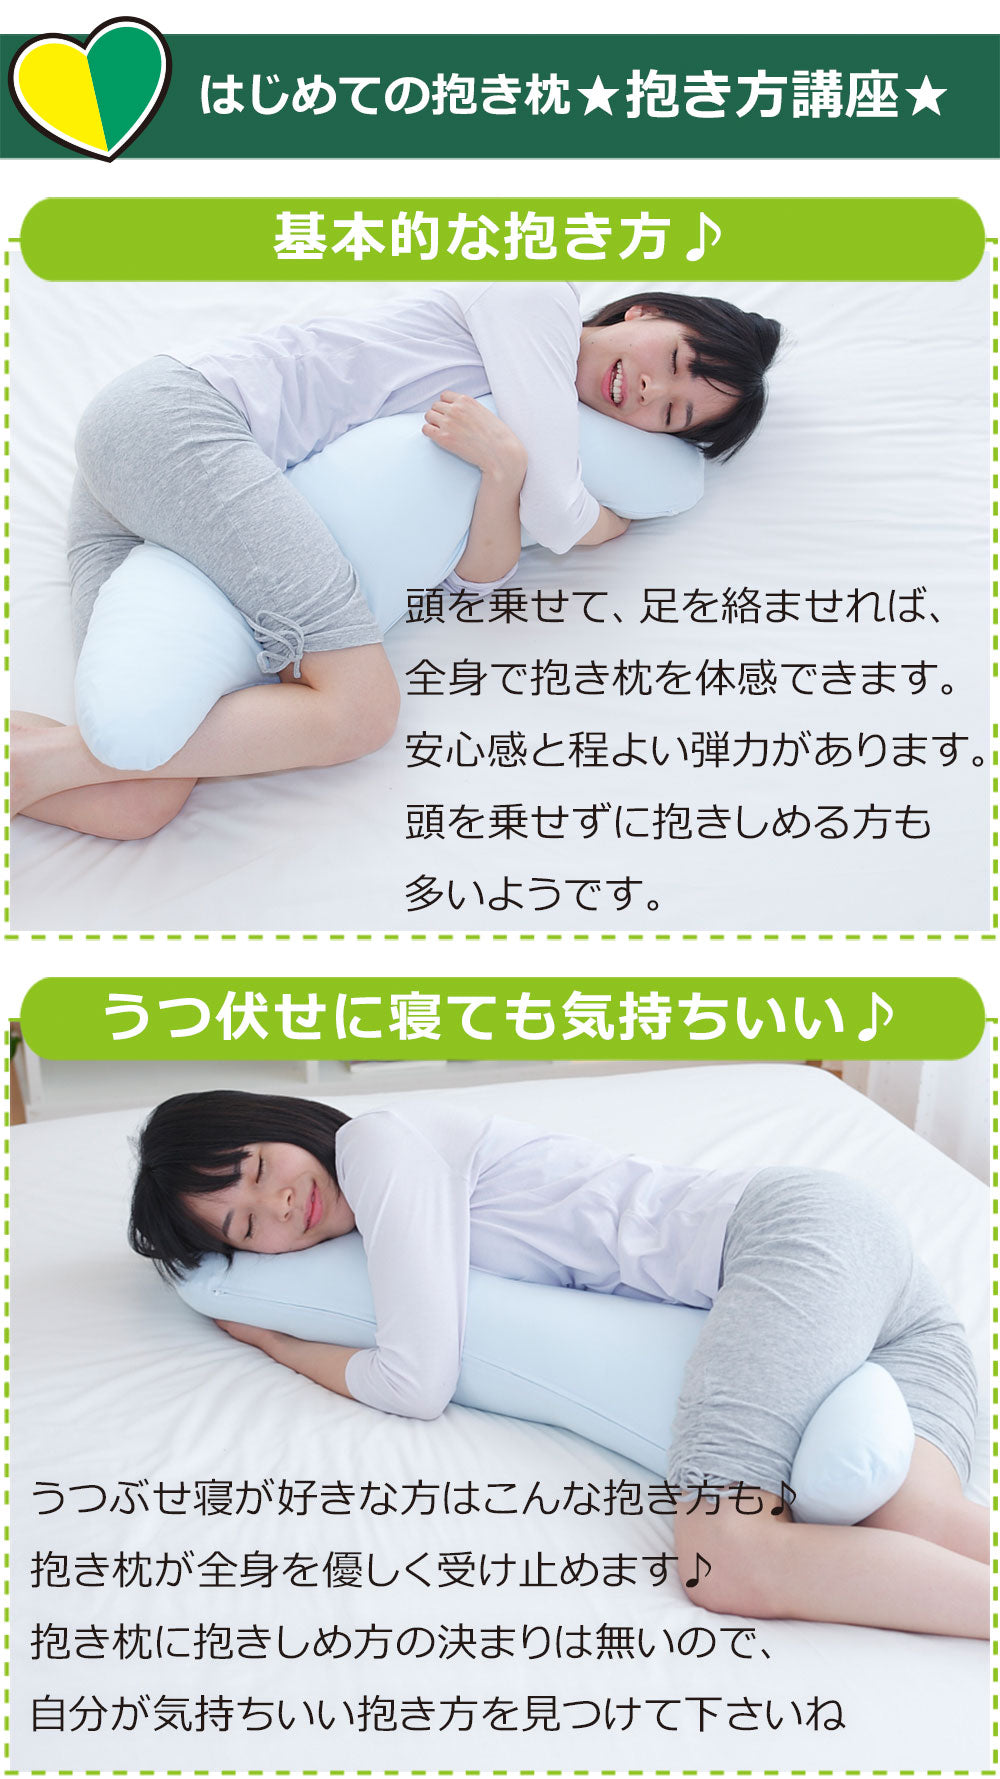 はじめての抱き枕 シンプルかつ高品質の日本製抱き枕 – 枕と眠りの